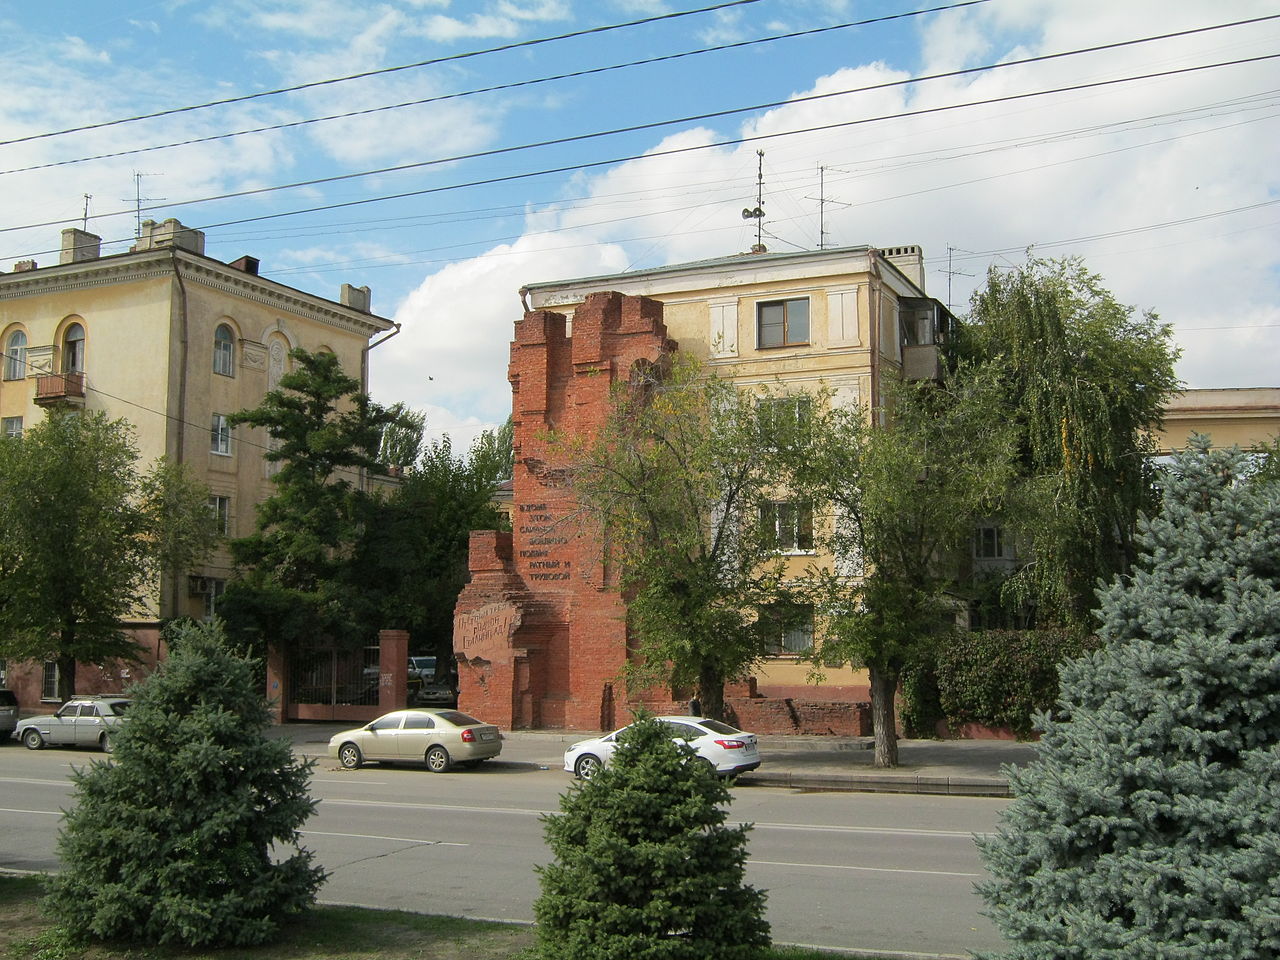 Дом Павлова в Волгограде: описание, история, экскурсии, точный адрес